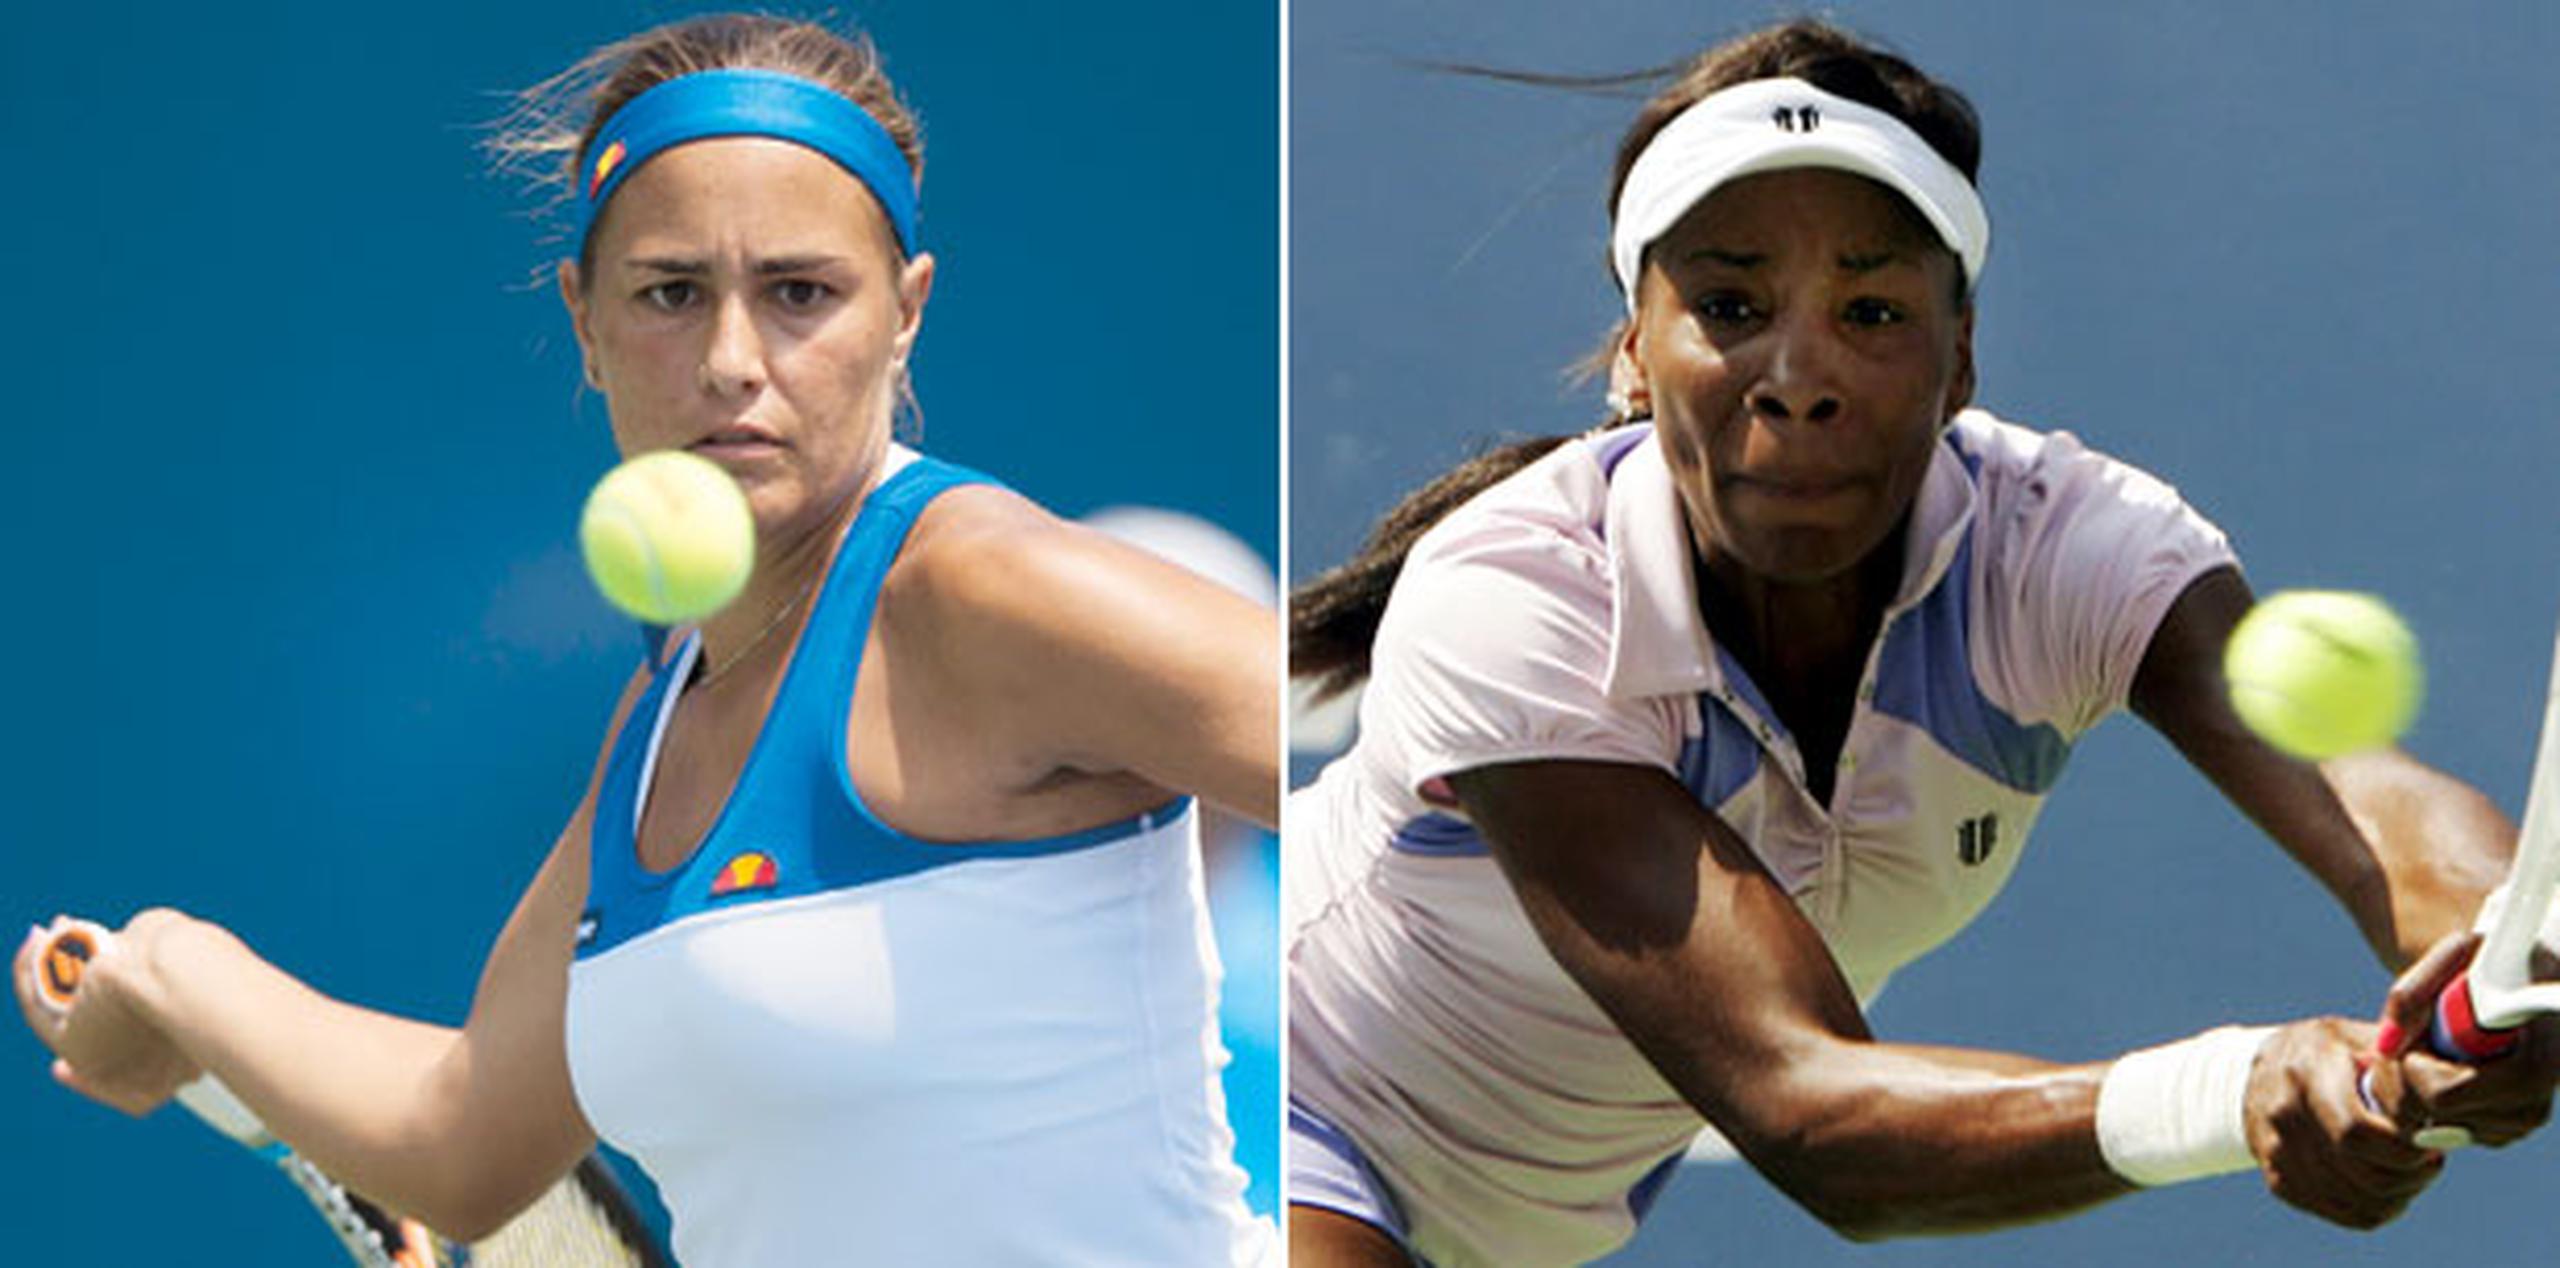 Puig (izquierda) ocupa la posición 85 en el ranking mundial de la Asociación de Tenis de Mujeres (WTA, por sus siglas en inglés), mientras que Williams es número 23. (Archivo)